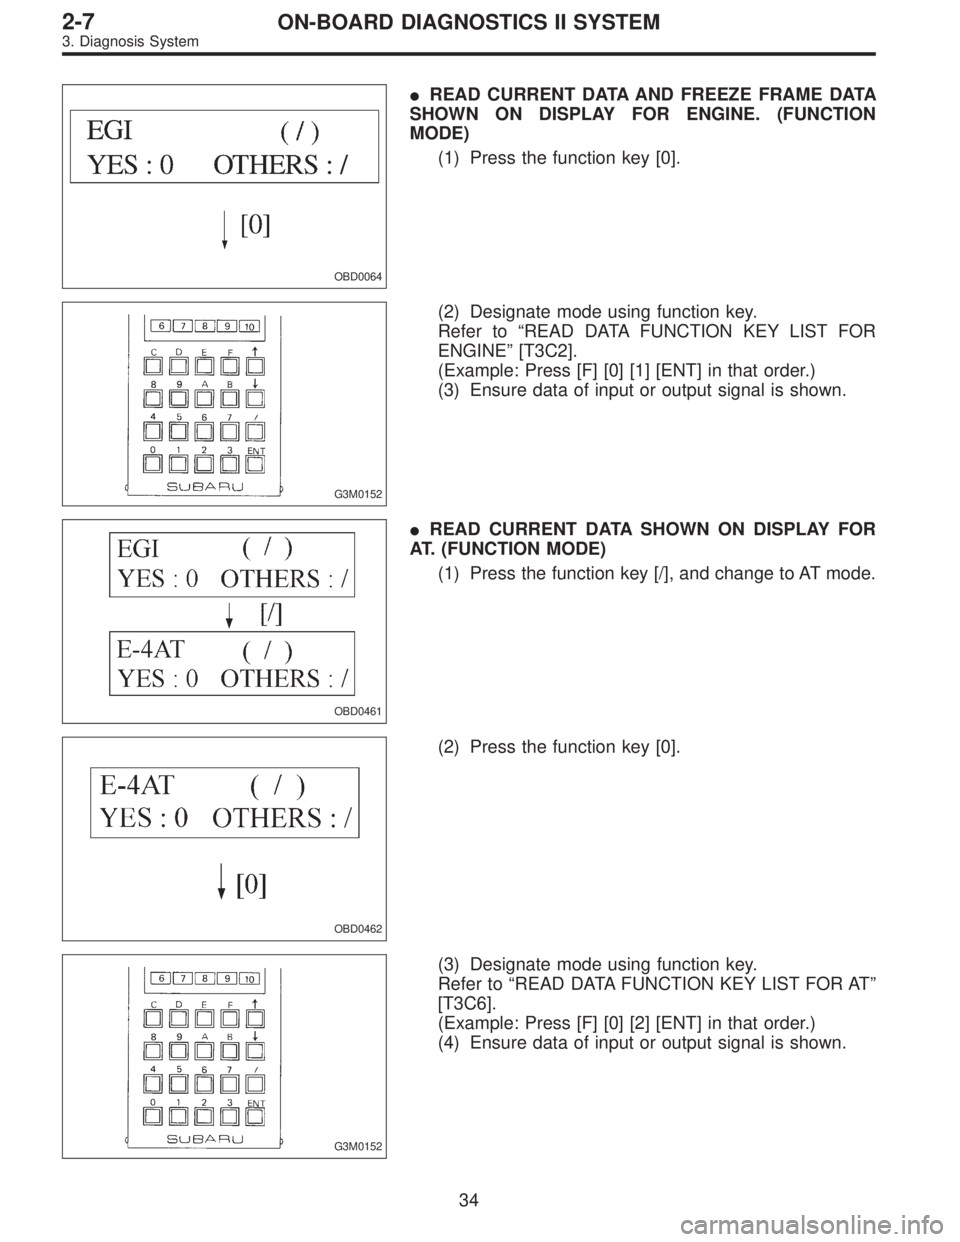 SUBARU LEGACY 1995  Service Repair Manual OBD0064
READ CURRENT DATA AND FREEZE FRAME DATA
SHOWN ON DISPLAY FOR ENGINE. (FUNCTION
MODE)
(1) Press the function key [0].
G3M0152
(2) Designate mode using function key.
Refer to“READ DATA FUNCTI